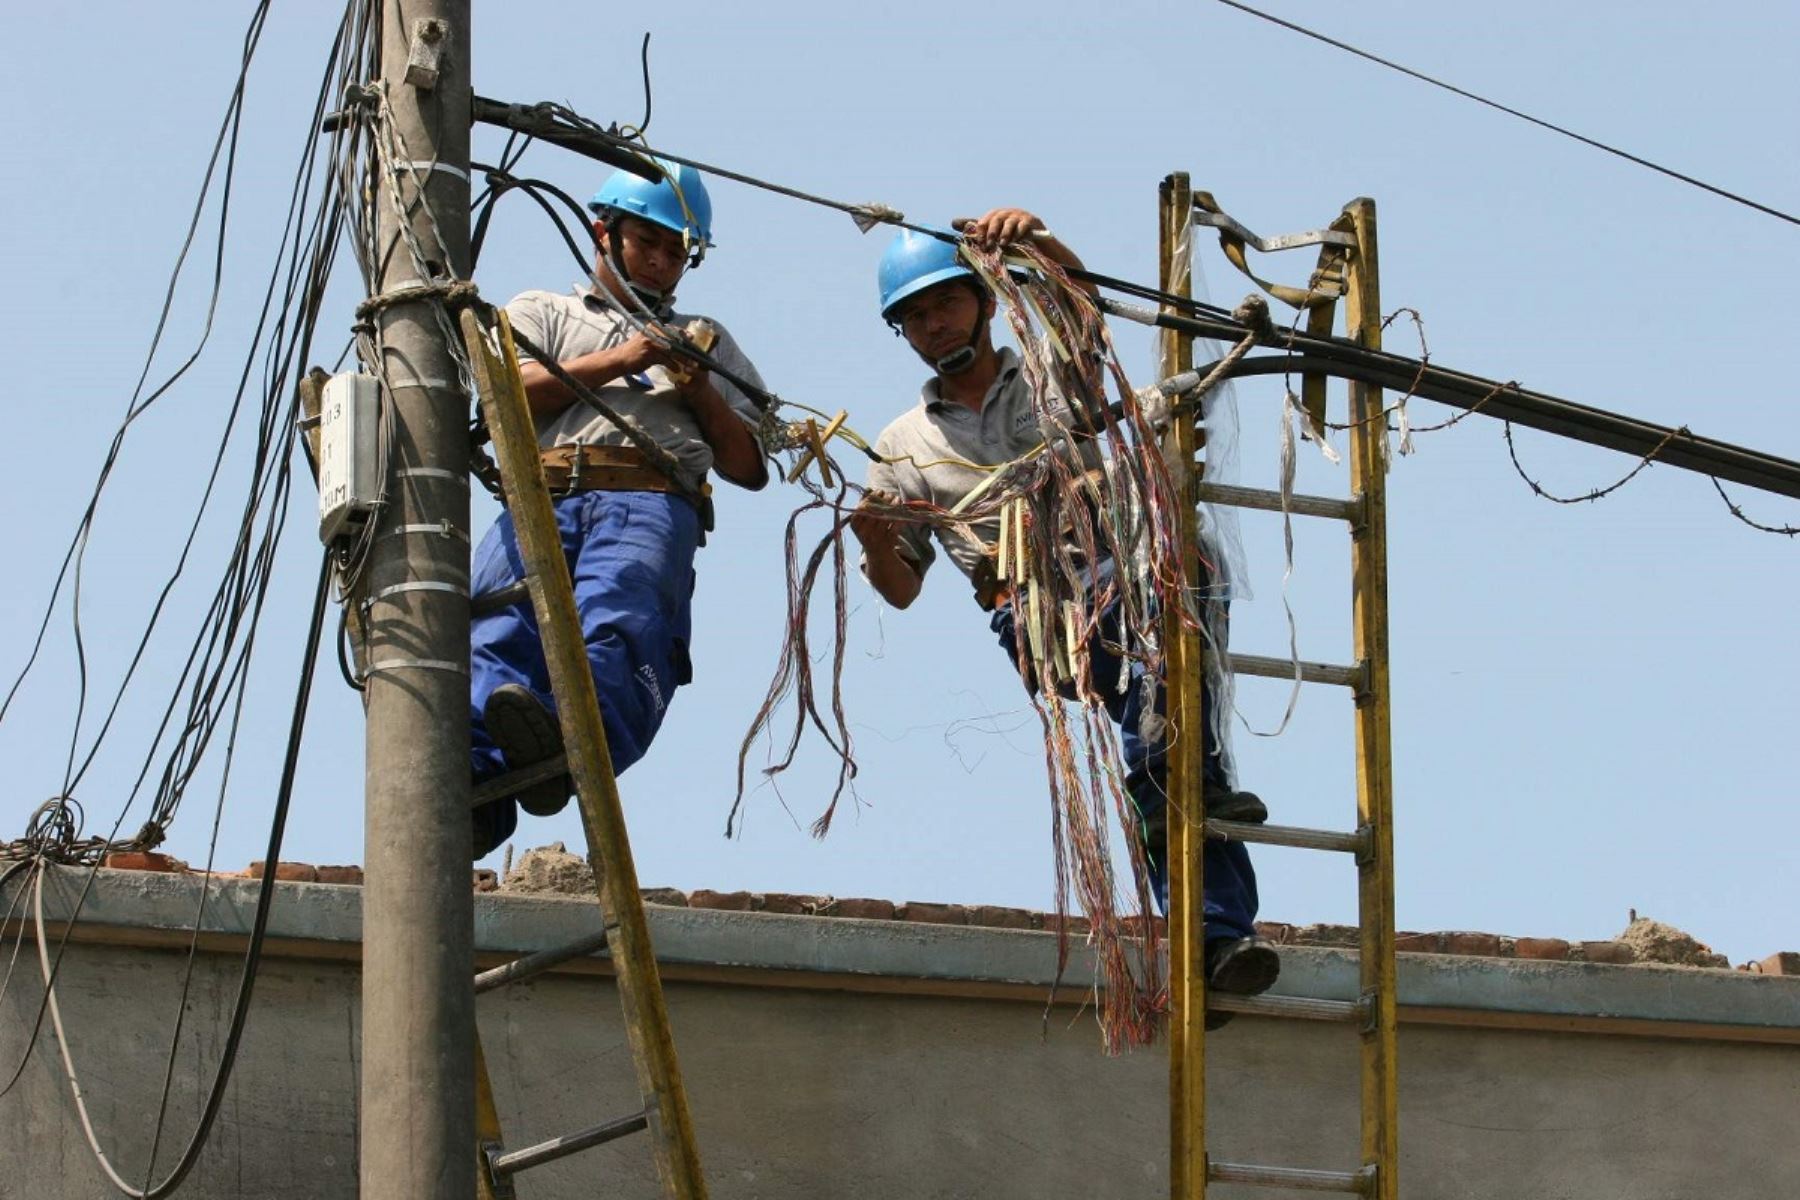 Técnicos reponiendo cables robados. Foto: Cortesía.